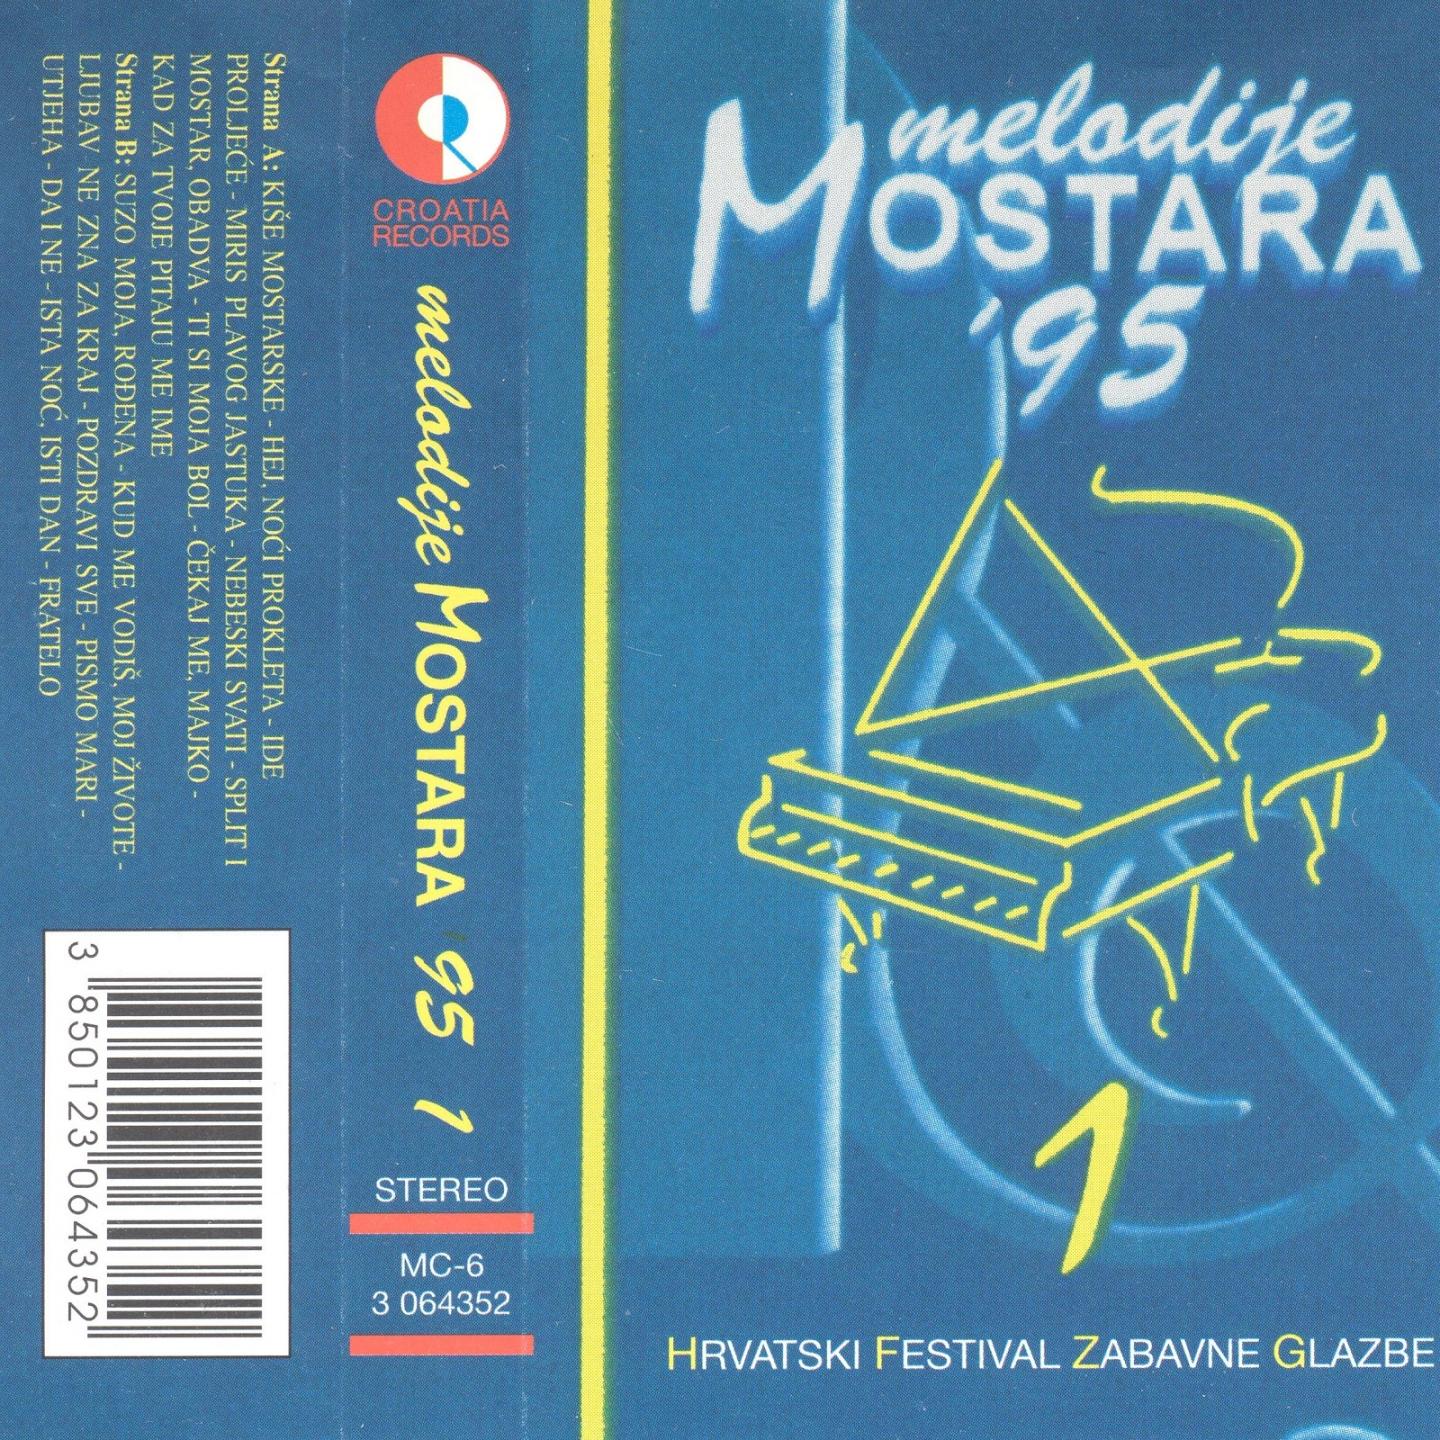 Melodije Mostara '95 I